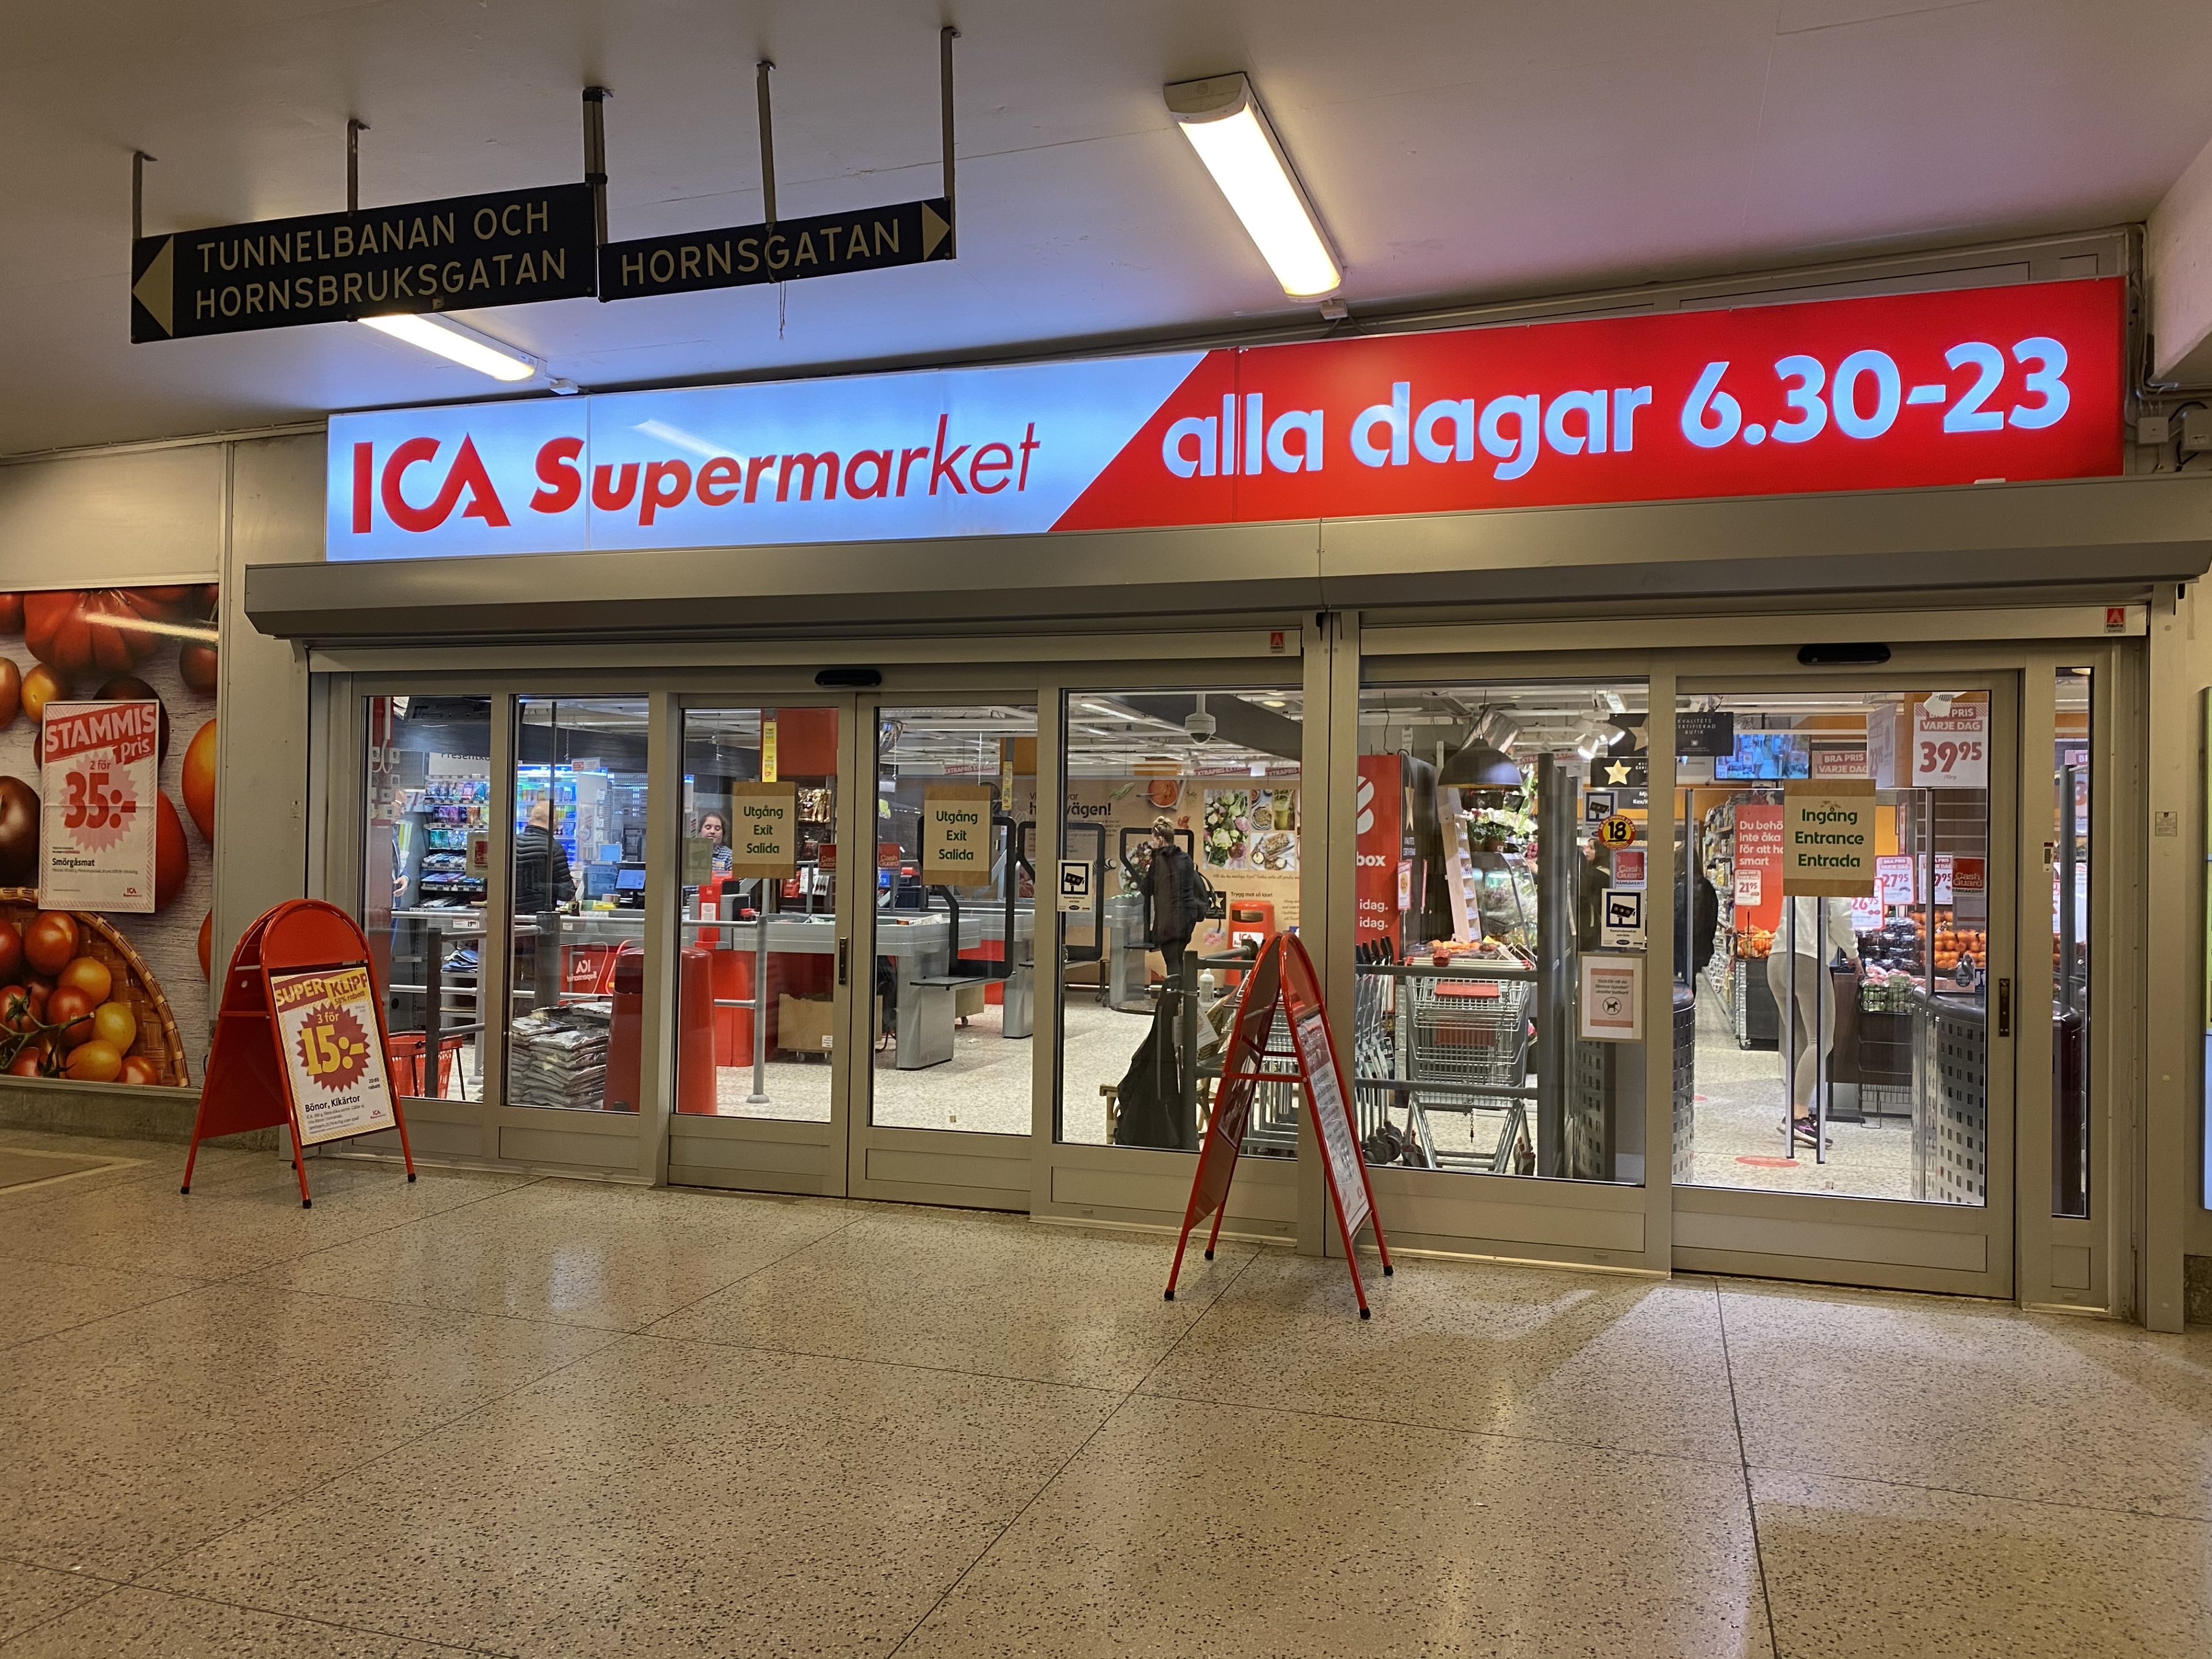 ICA Supermarket Högalid